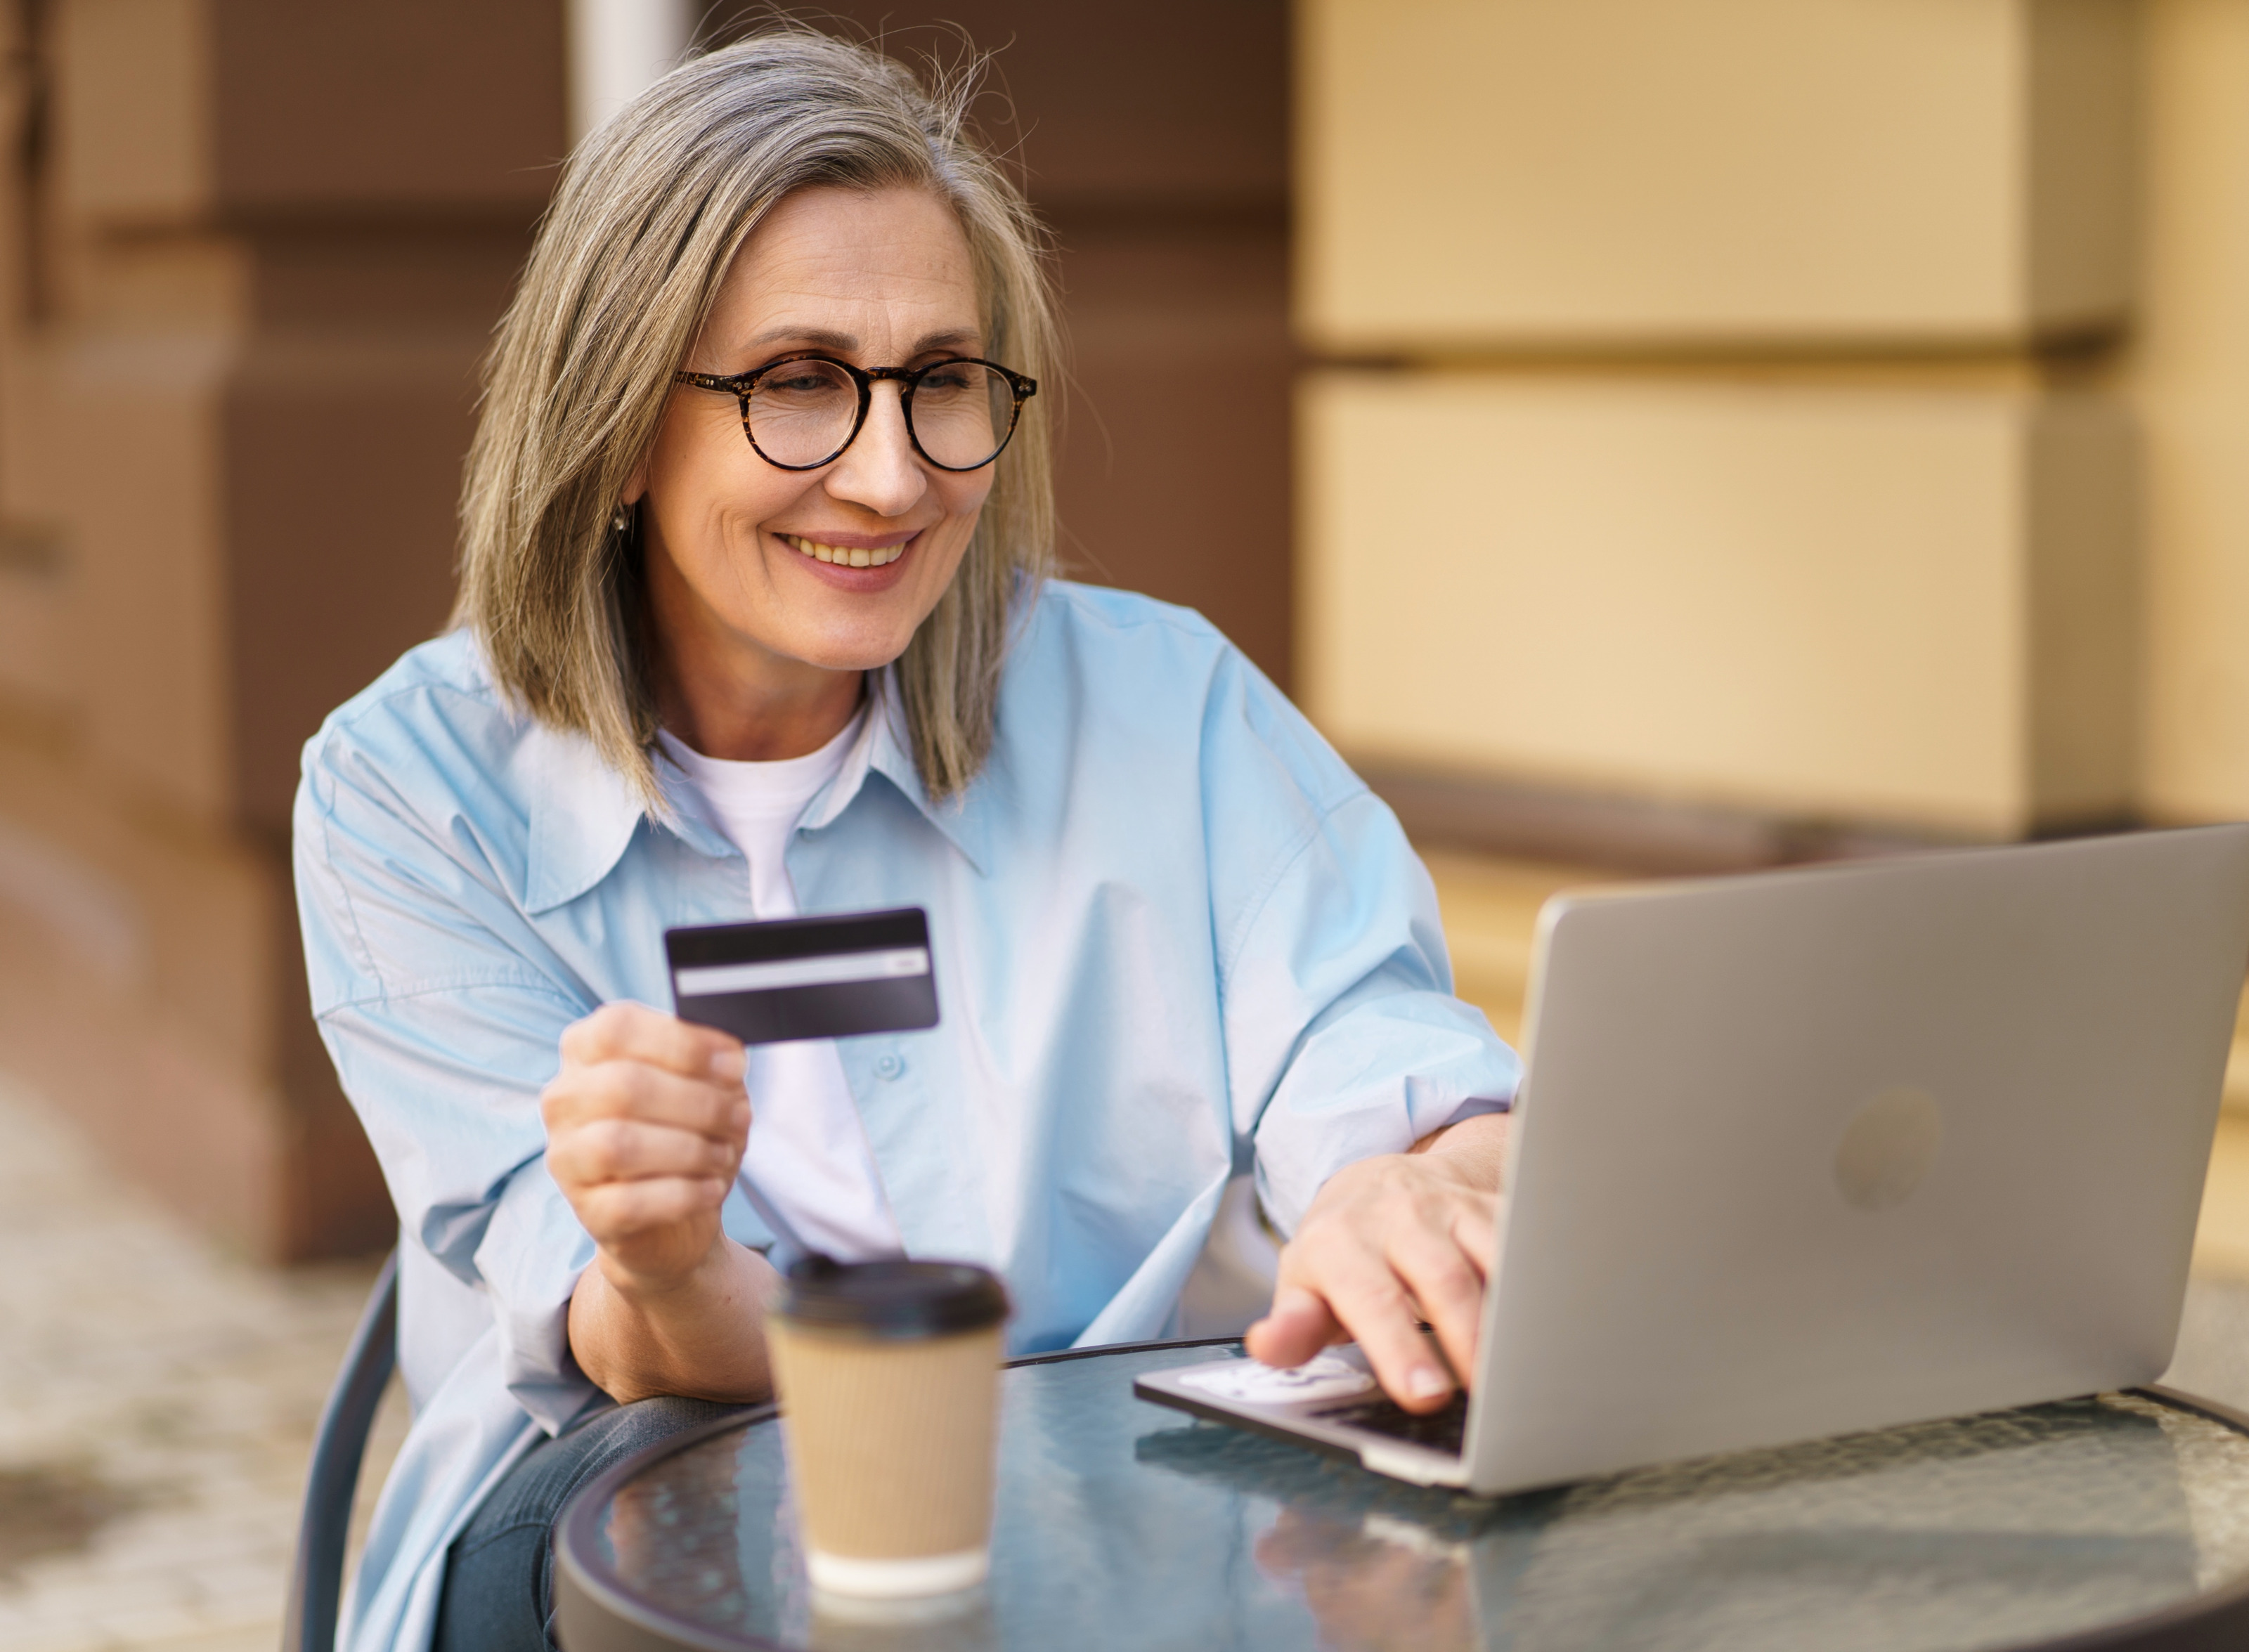 Lächelnde Person mit Brillen Bistrotisch vor aufgeklappten Laptop sitzend hält Bankkarte in Händen und blickt auf Monitor, auf Tisch verschwommen im Vordergrund Kaffeebecher